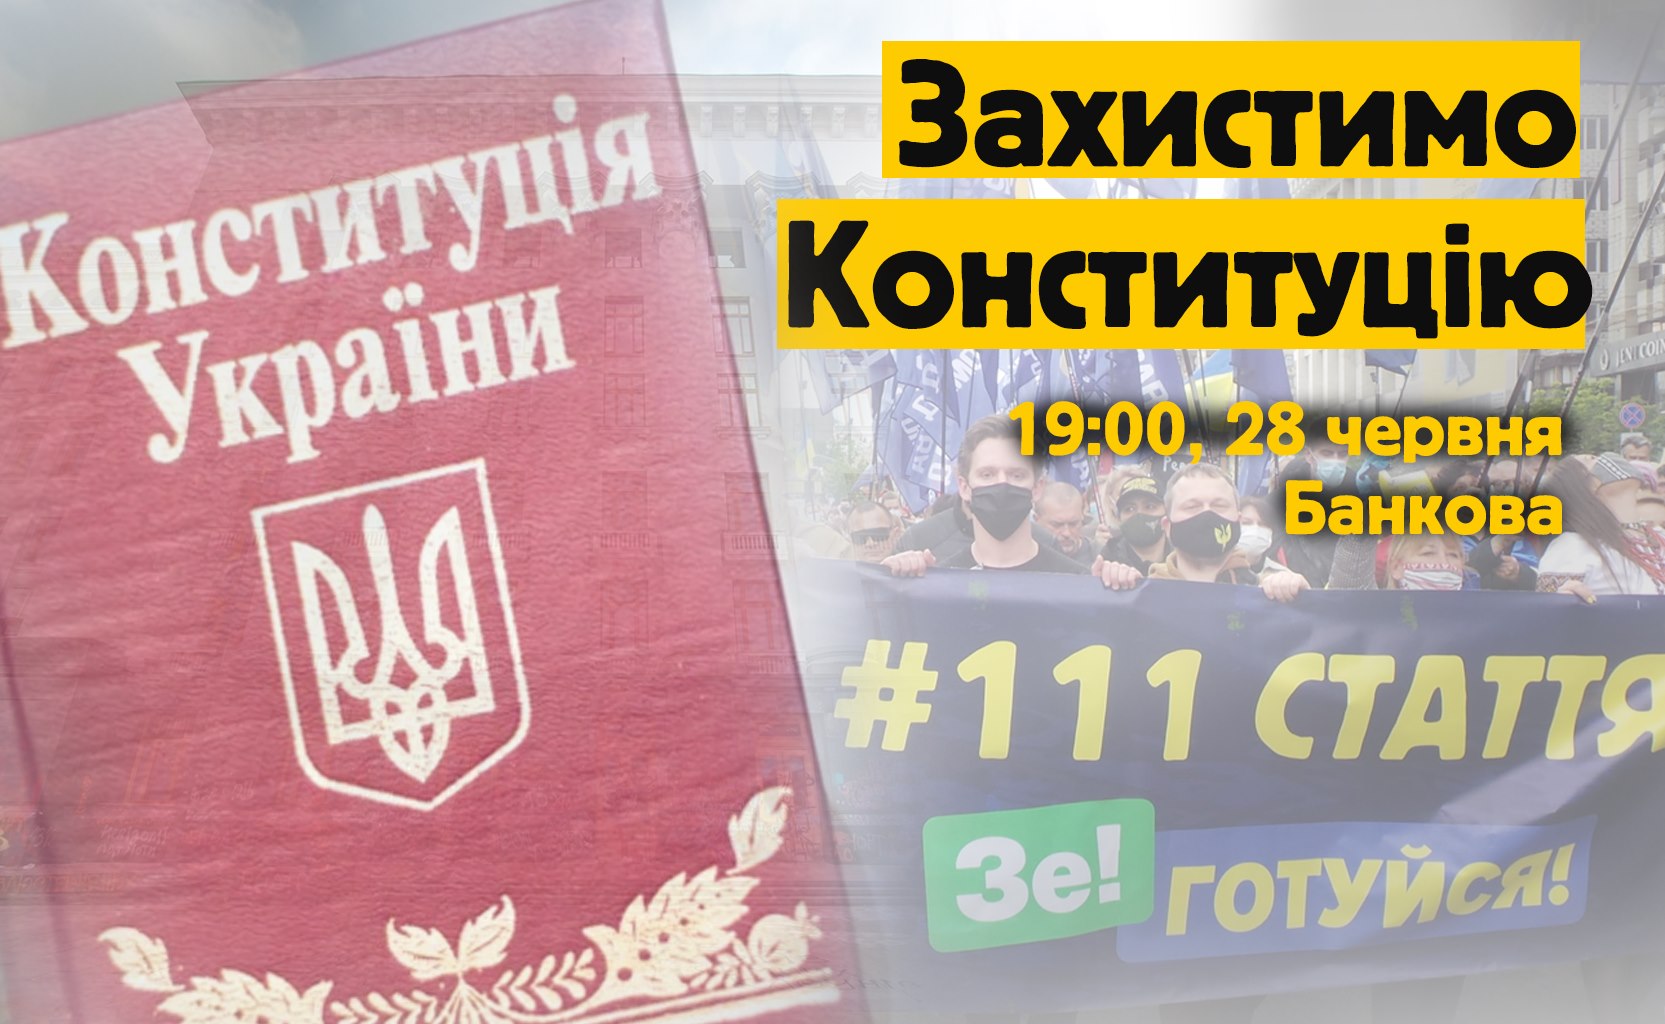 «Предвестник нового Майдана». Радикалы в День Конституции объявят Зеленскому «подозрение» в госизмене